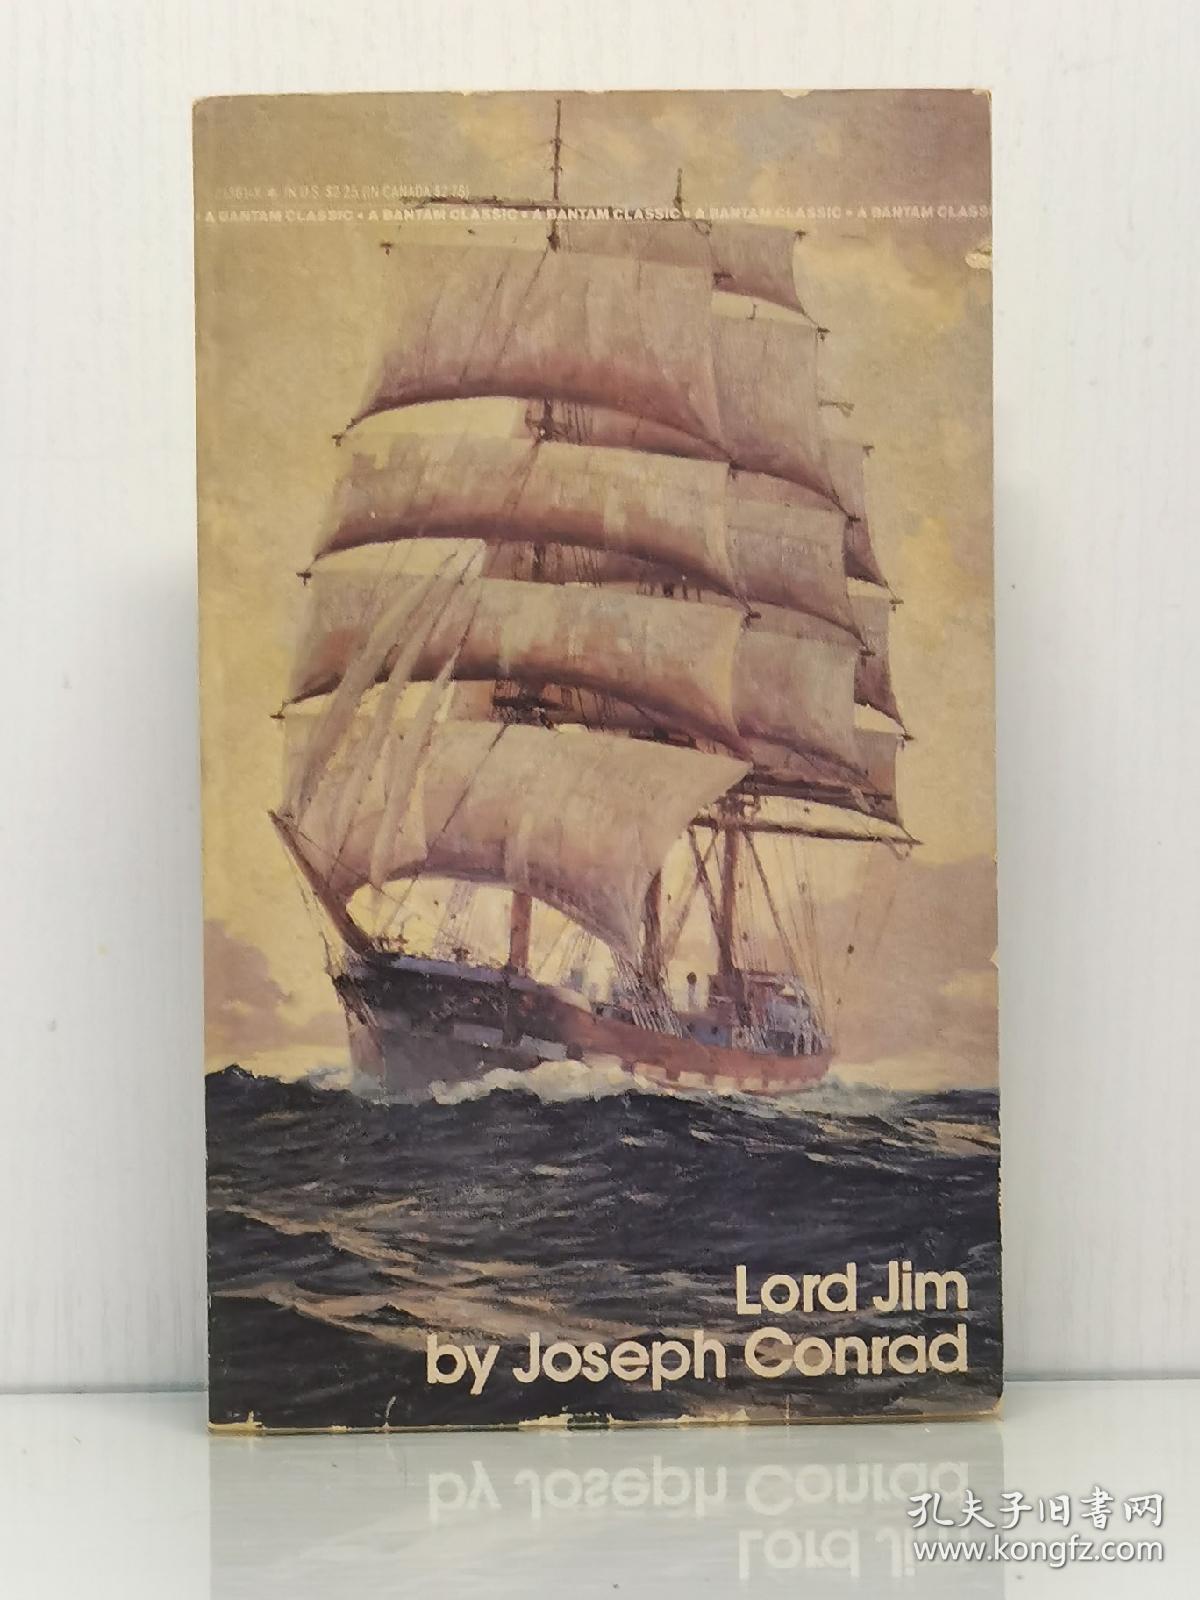 约瑟夫·康拉德 《吉姆老爷》   Lord Jim by Joseph Conrad [Bantam  1981年版]  （英国文学）英文原版书